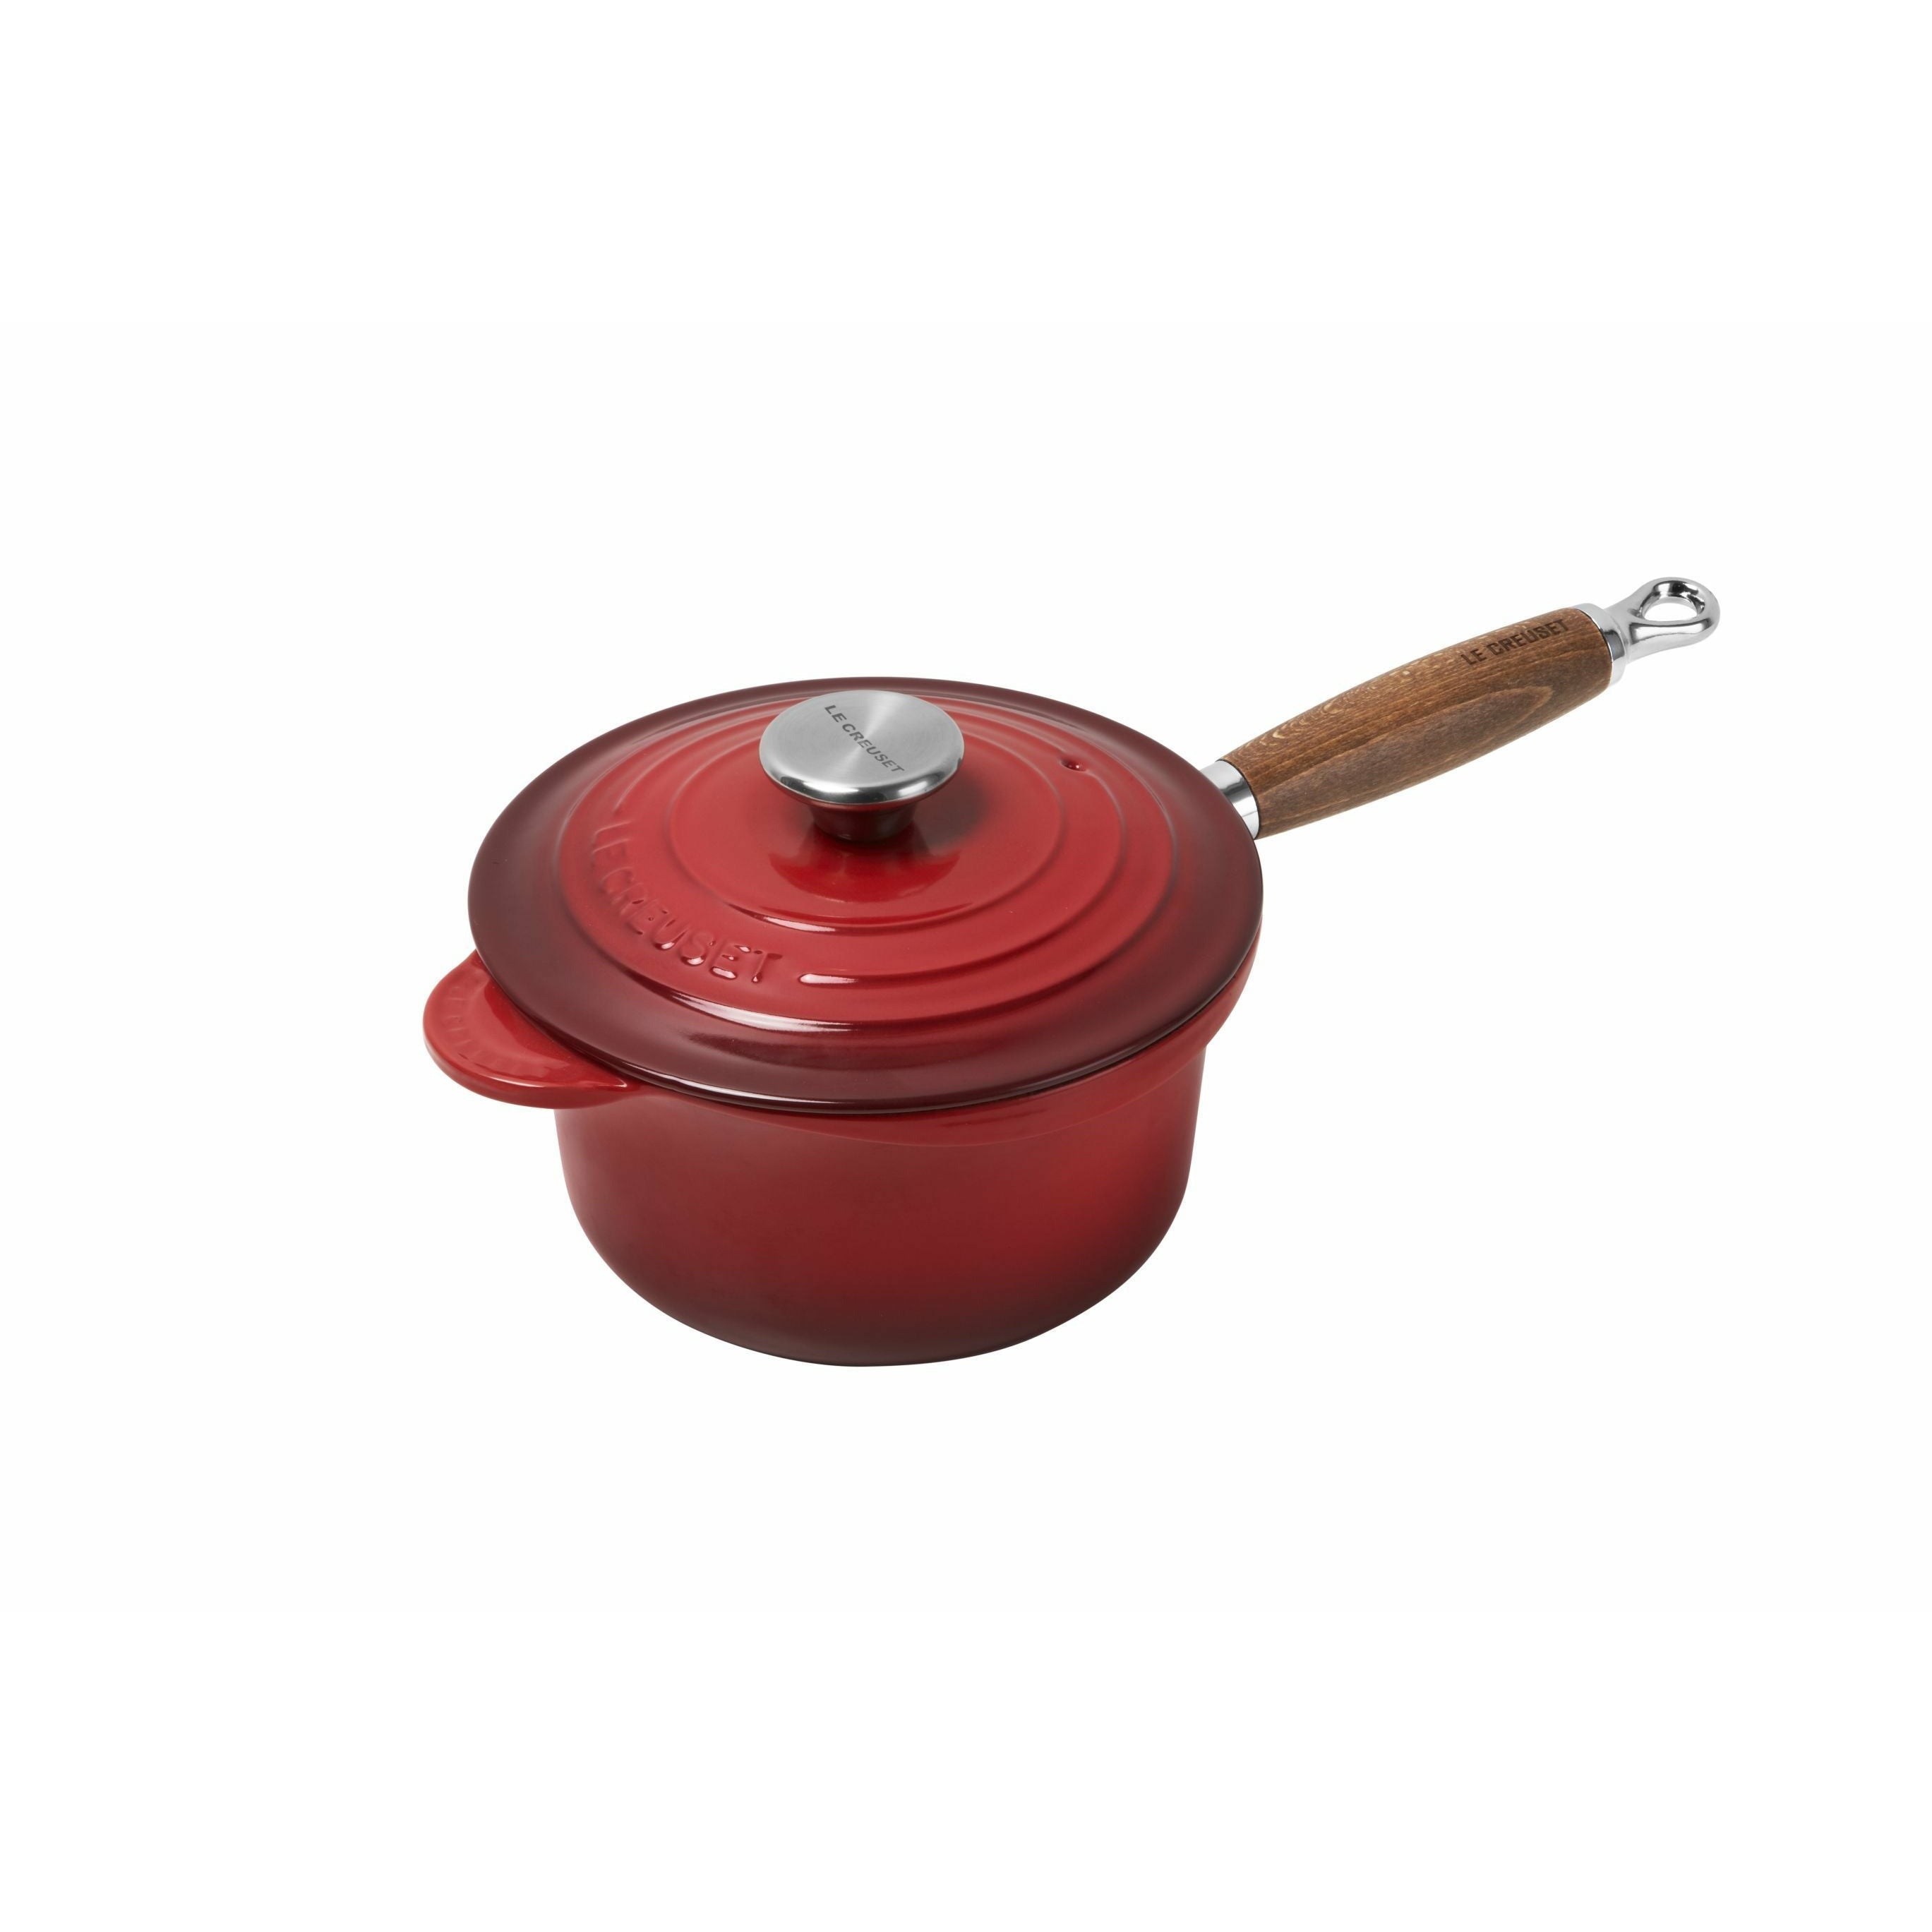 Le Creuset Tradition Professional Pot avec poignée en bois 18 cm, cerise rouge